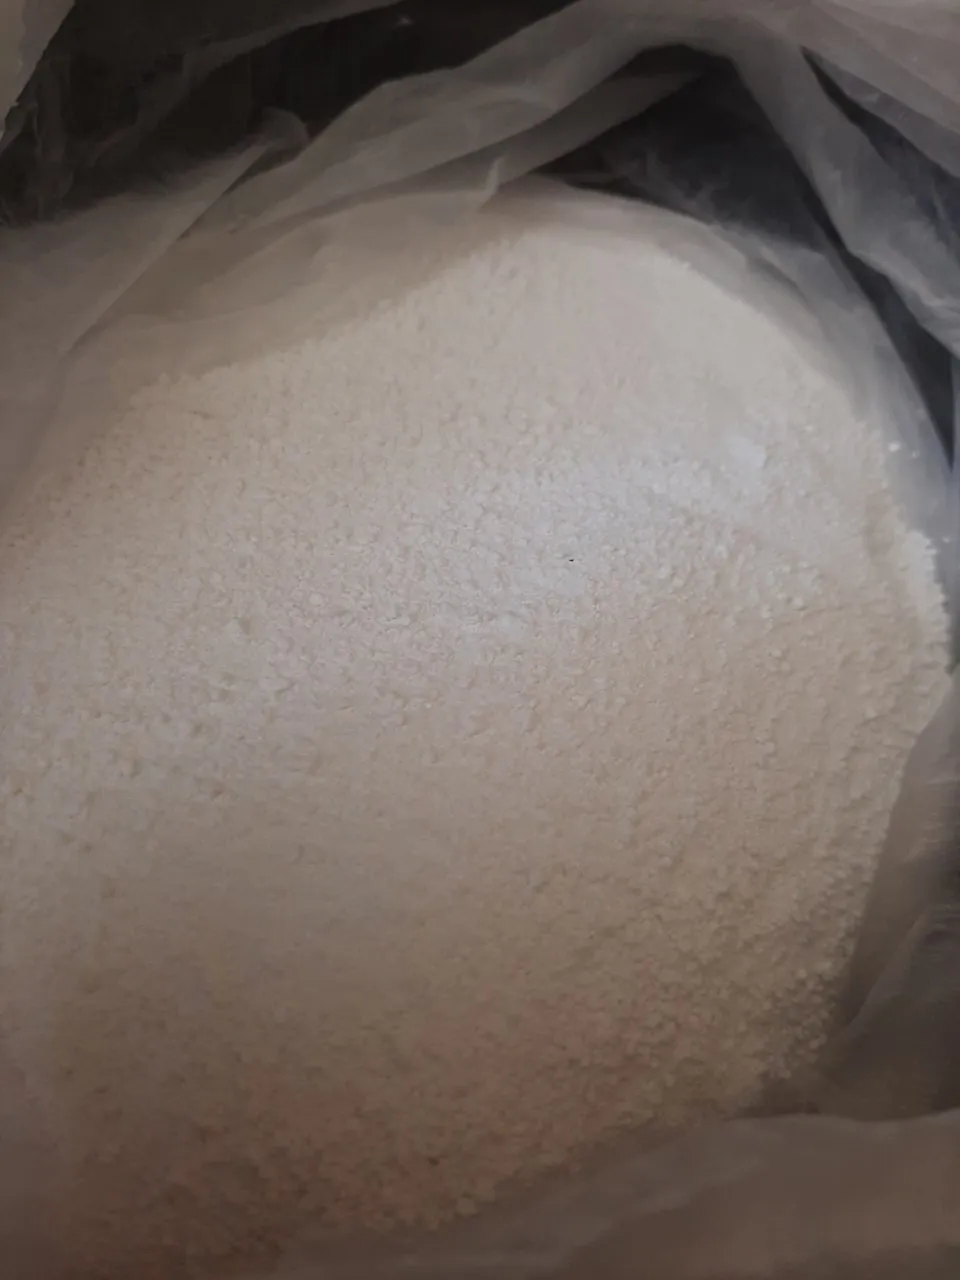 Natriy percarbonat (Sodium percarbonate)#5